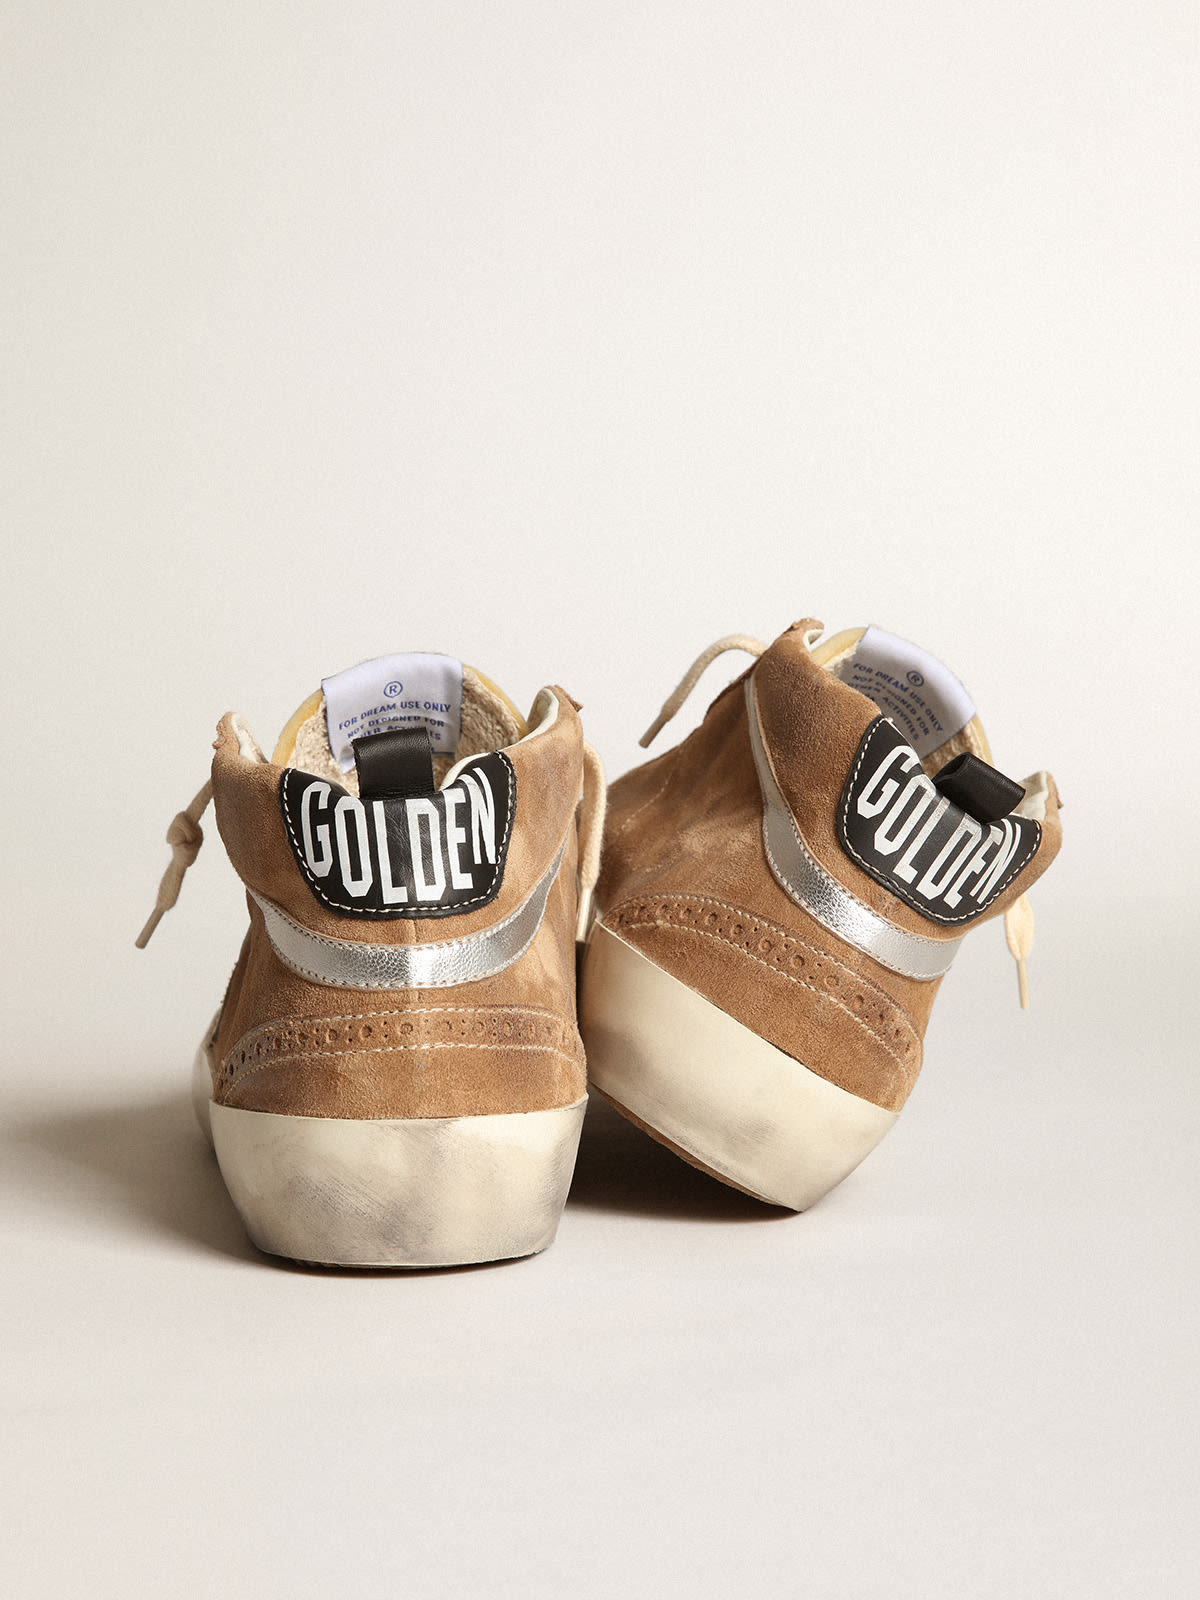 Golden Goose - Sneakers Mid Star en daim couleur tabac avec étoile en cuir blanc et virgule en cuir lamé argenté in 